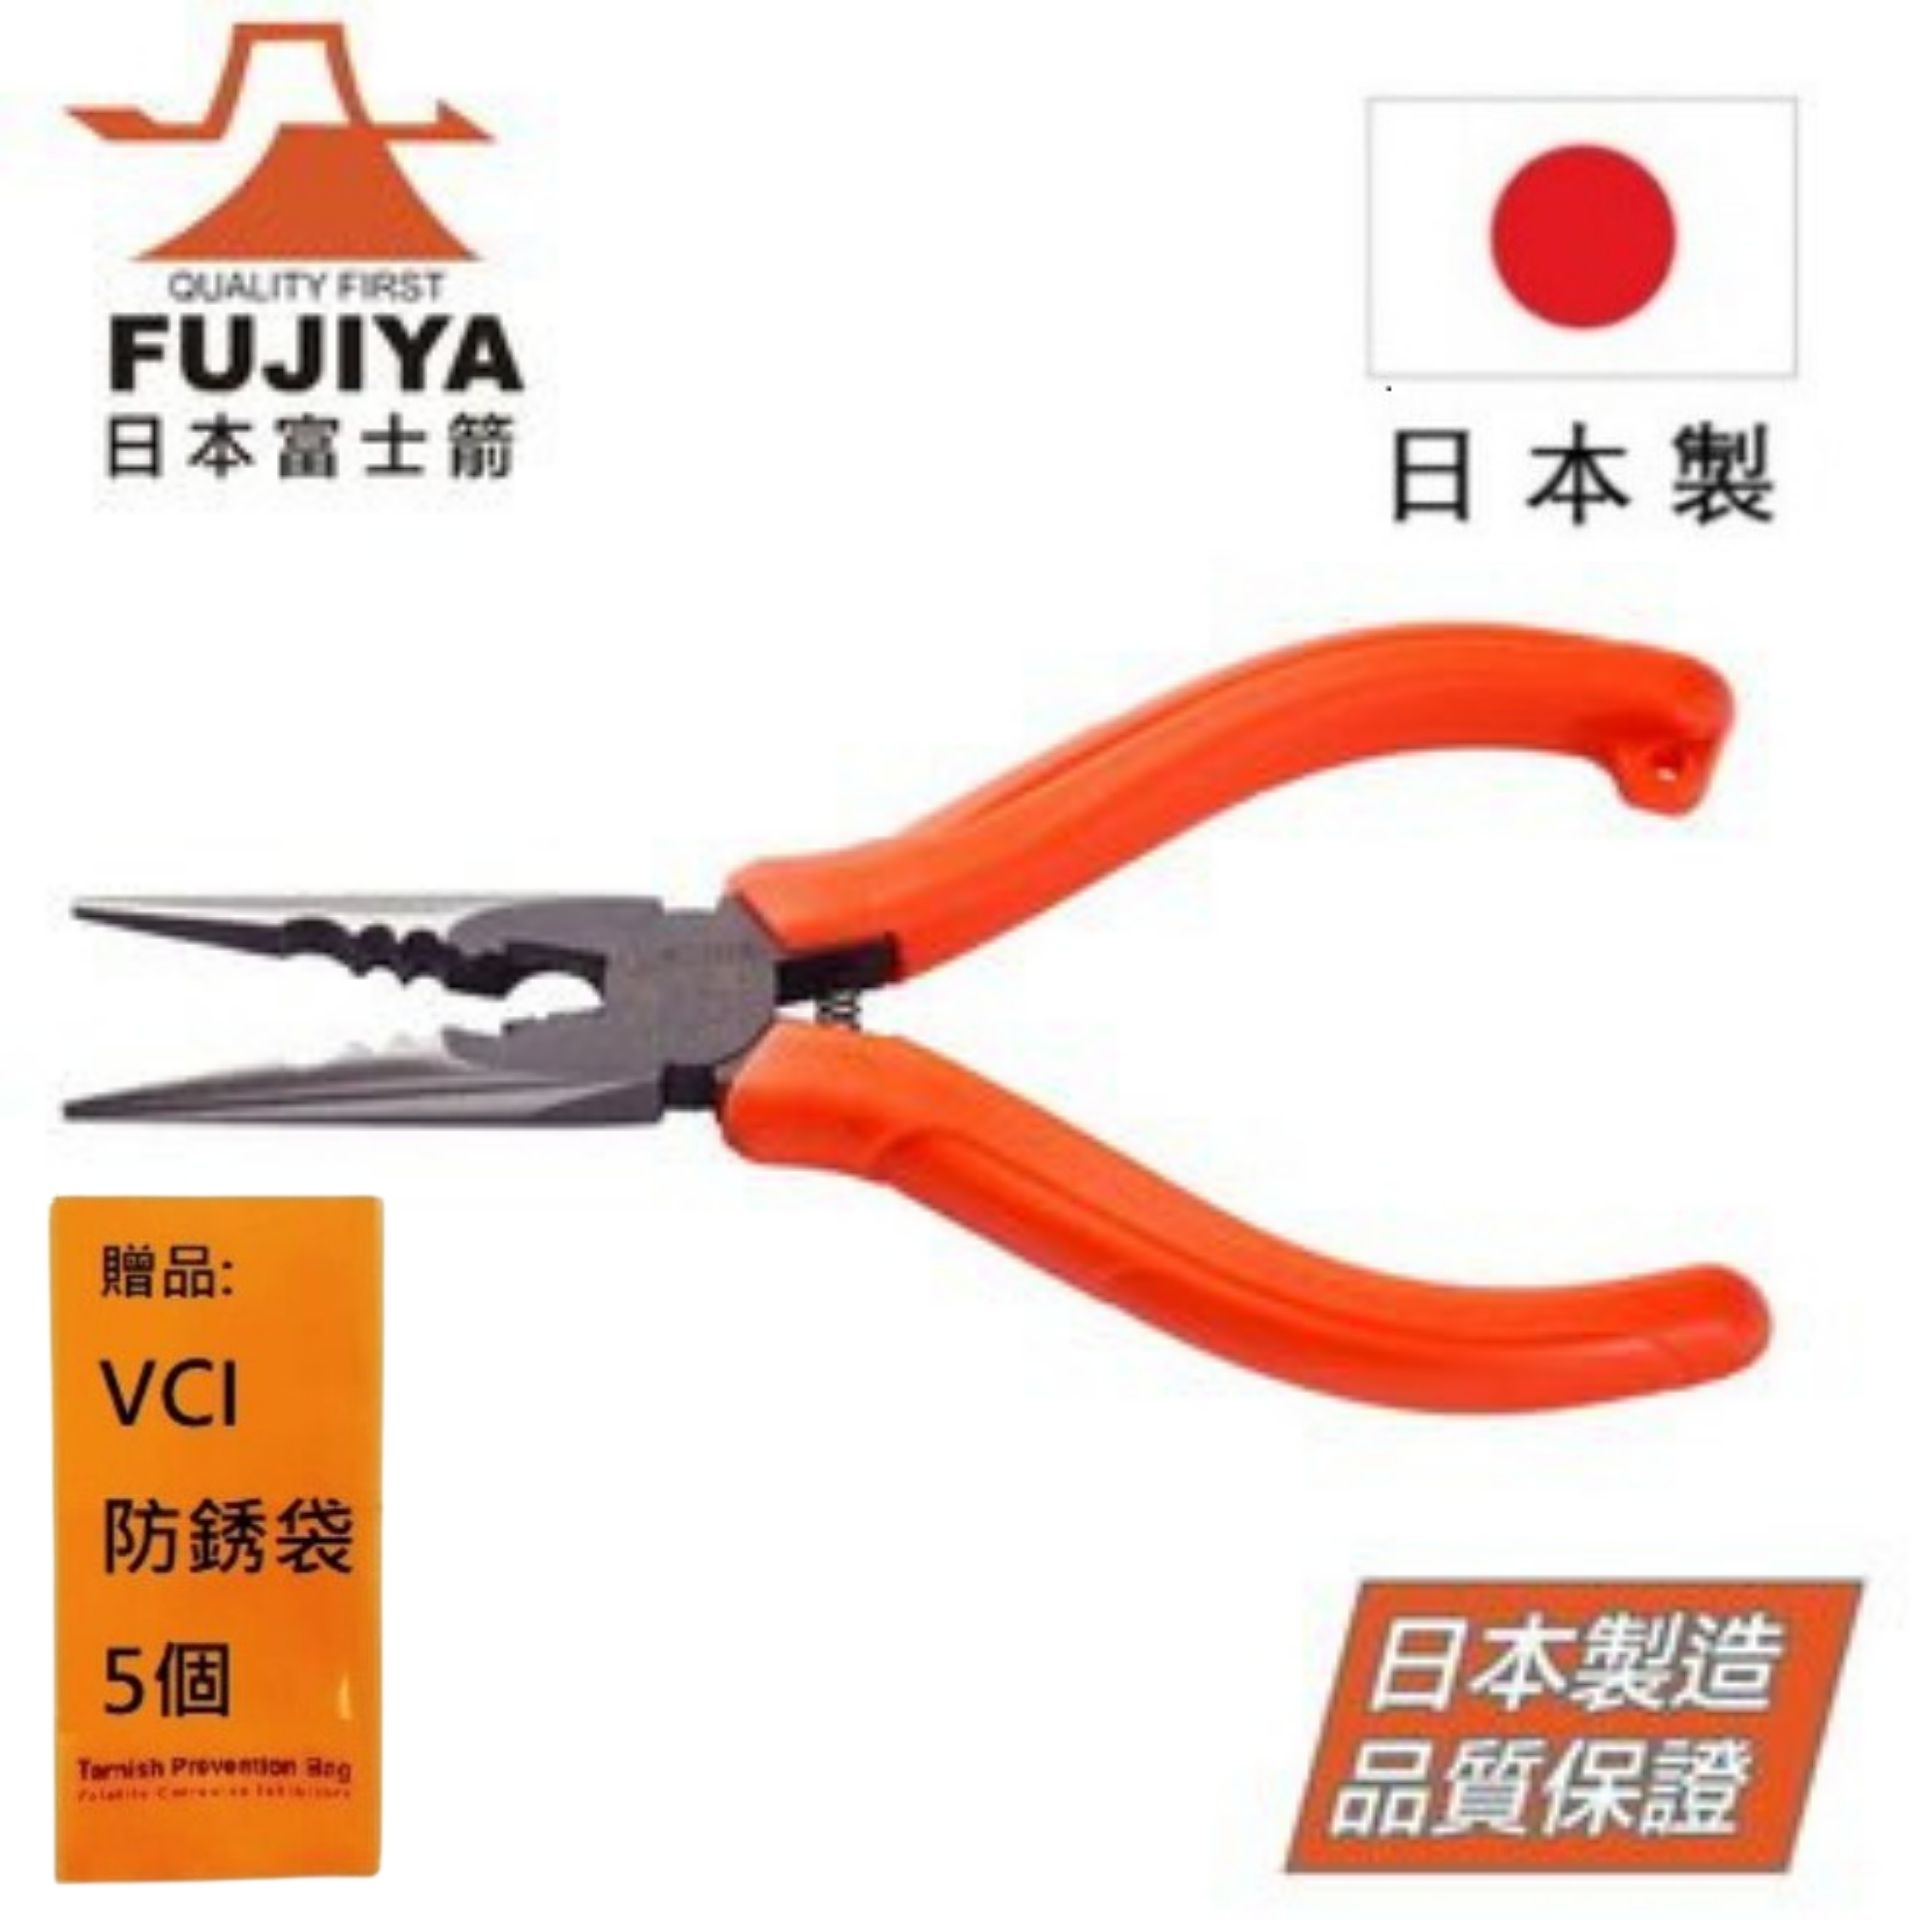 【日本Fujiya富士箭】 多用途尖口鉗 150mm GMR-150S